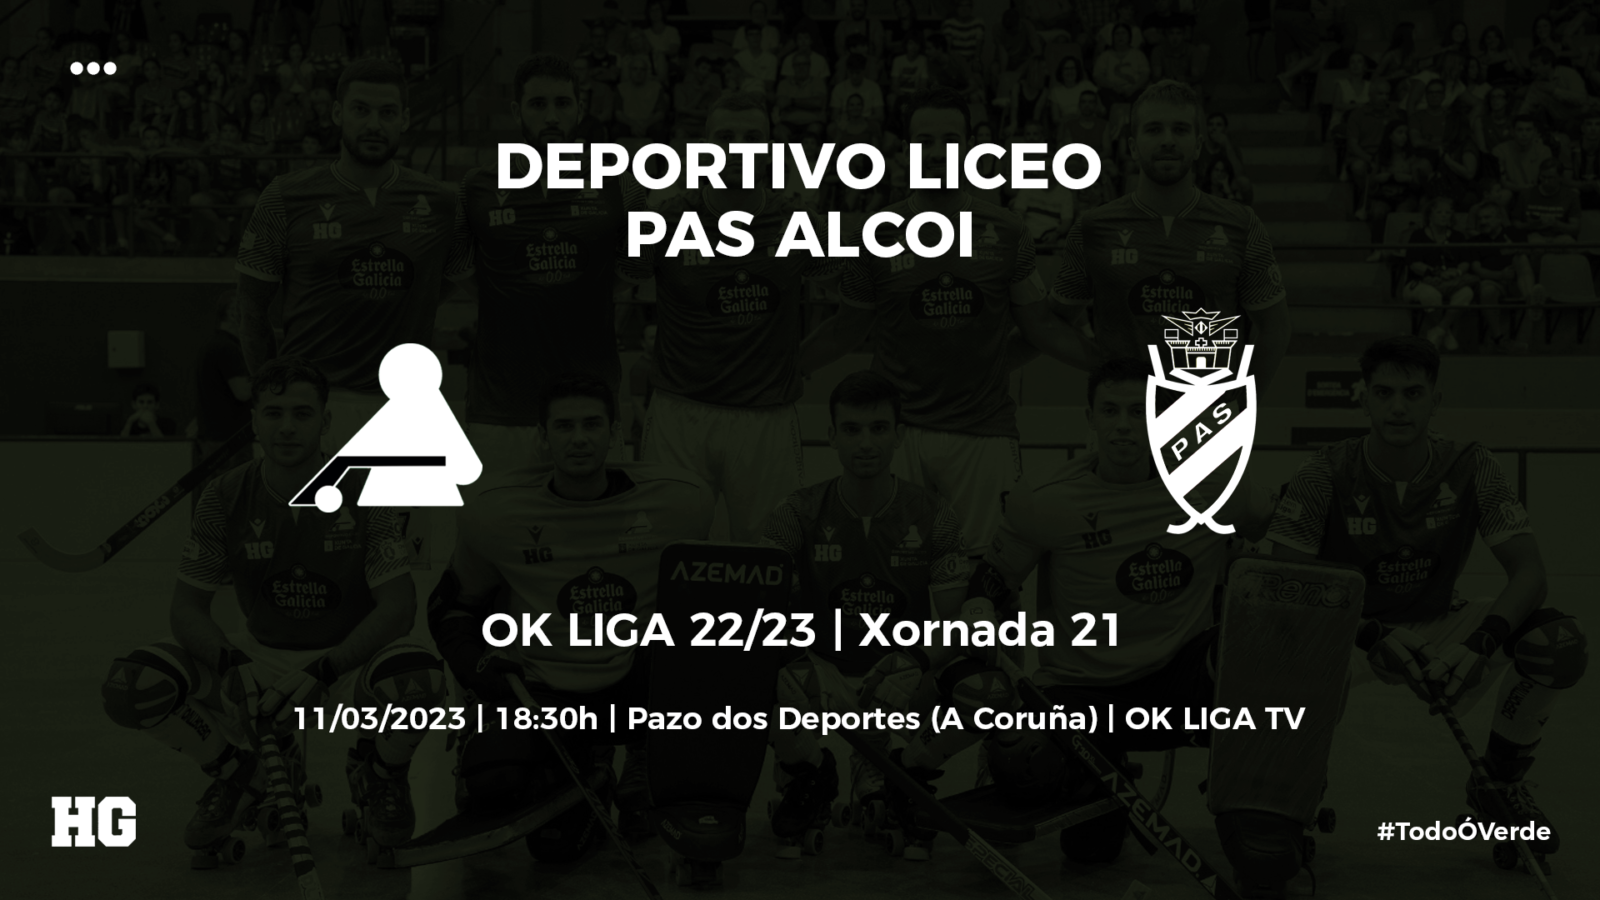 Entradas de público general para el Deportivo Liceo-Alcoi (11 de marzo)